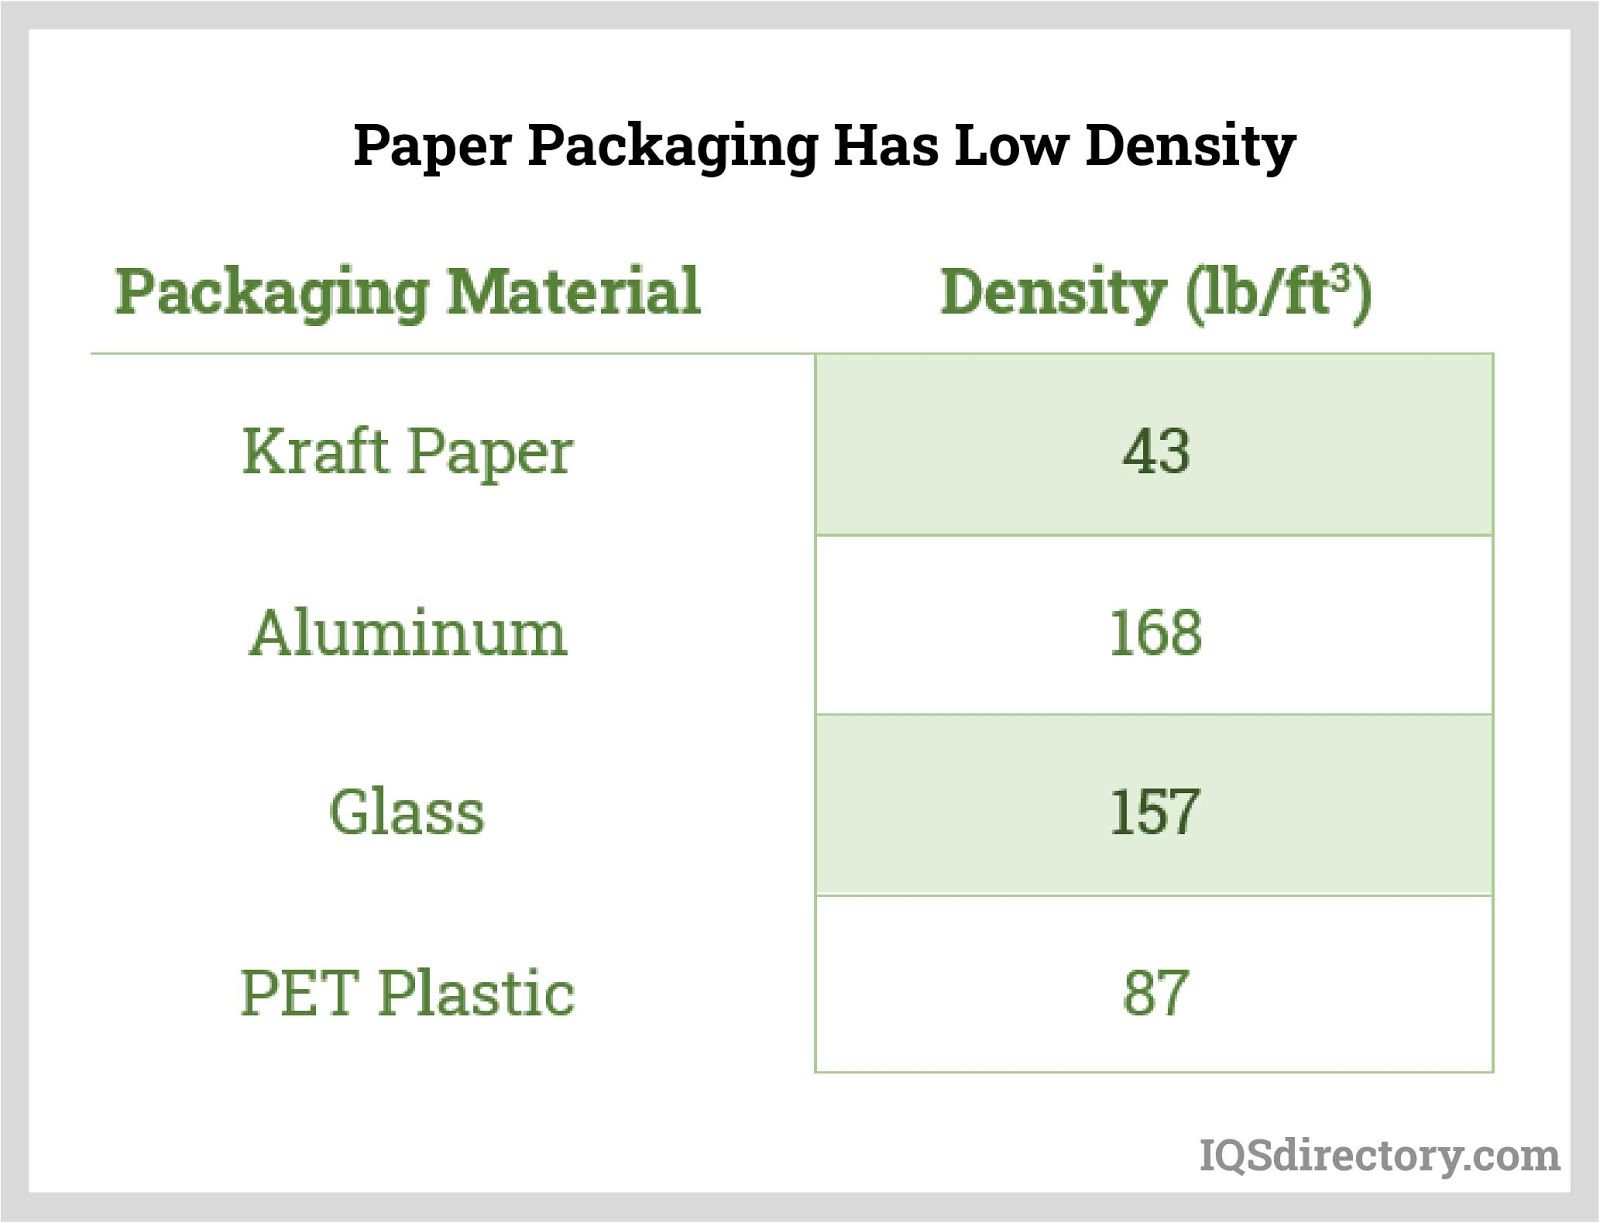 Paper Packaging Has Low Density